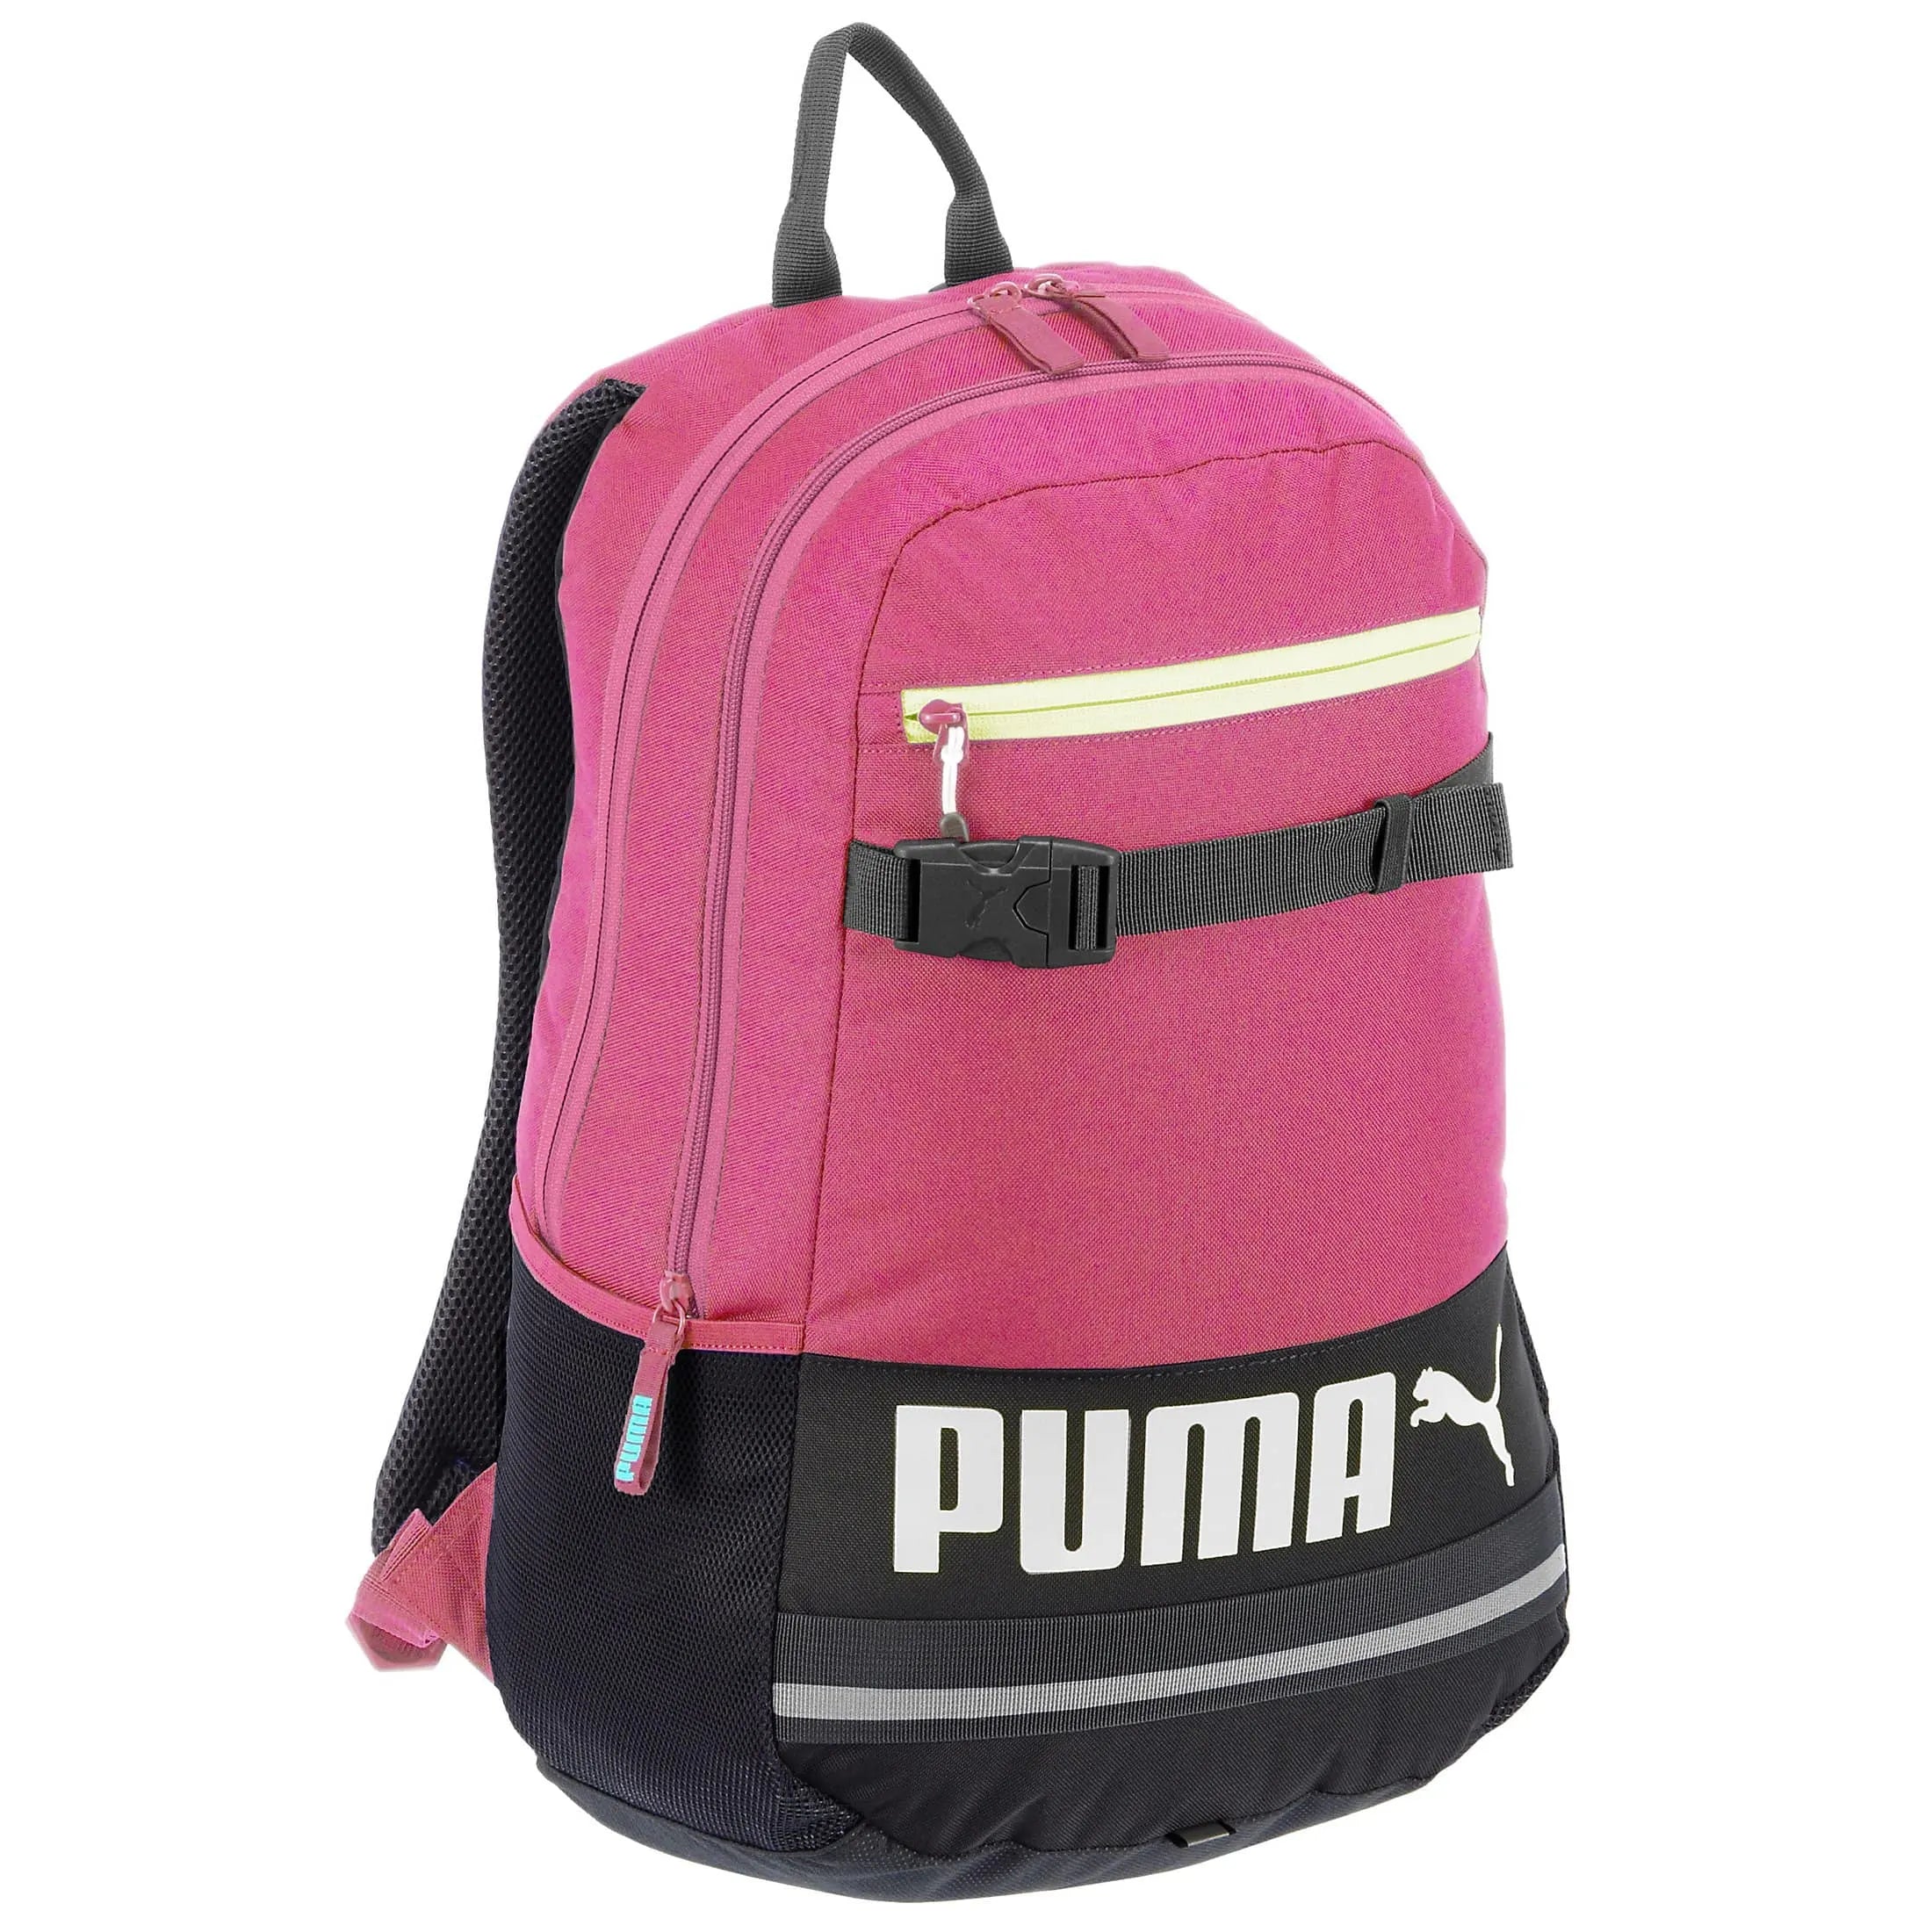 Puma Deck Backpack sac à dos avec compartiment pour ordinateur portable 50 cm - violet fuchsia